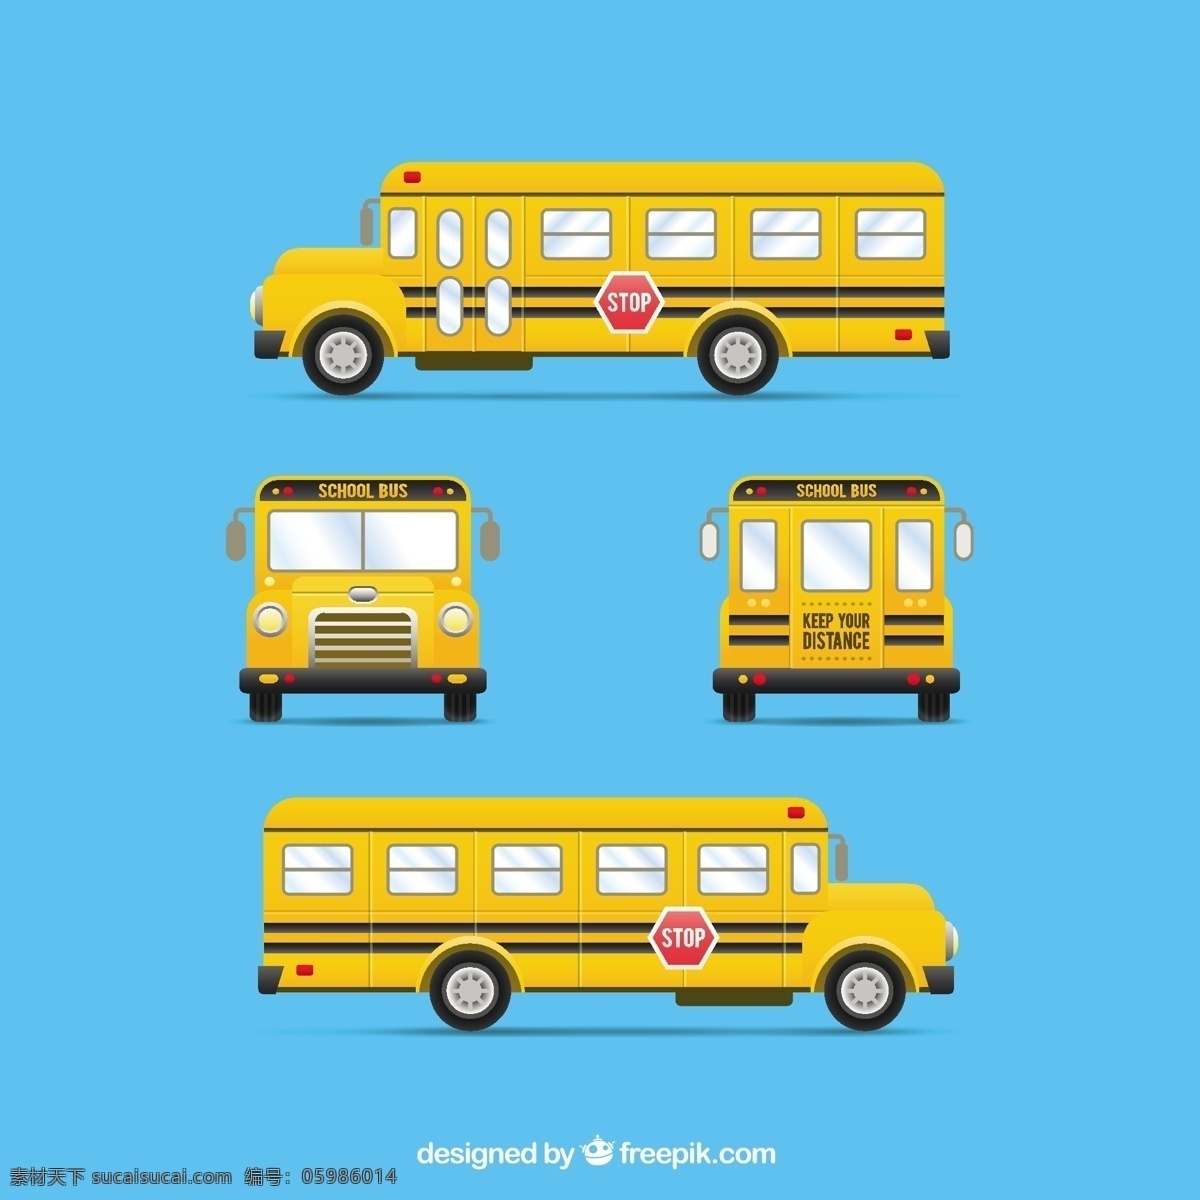 黄色的校车 学校 孩子 公共汽车 交通 黄色 大学 学校的孩子 校车 青色 天蓝色